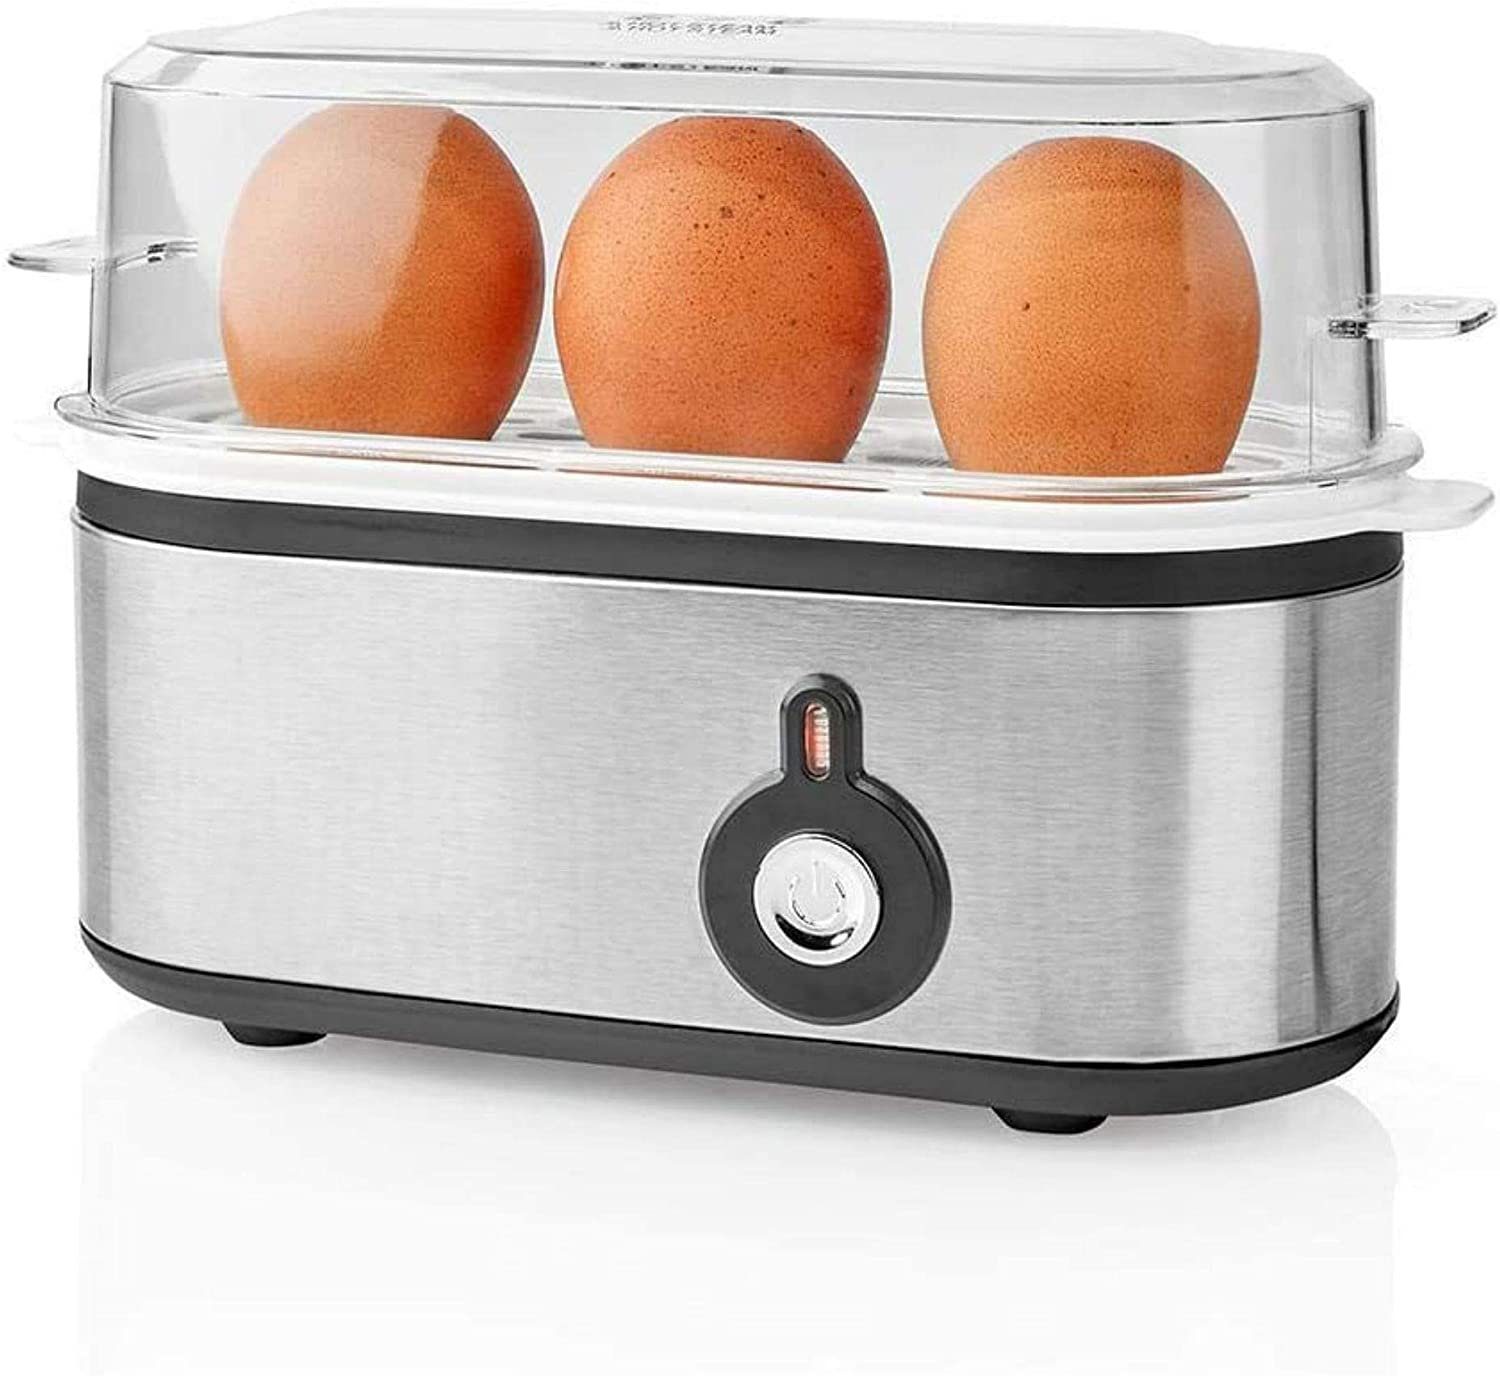 TronicXL Eierkocher Eierkocher für 3 Eier silber klein mit Messbecher Mini Edelstahl